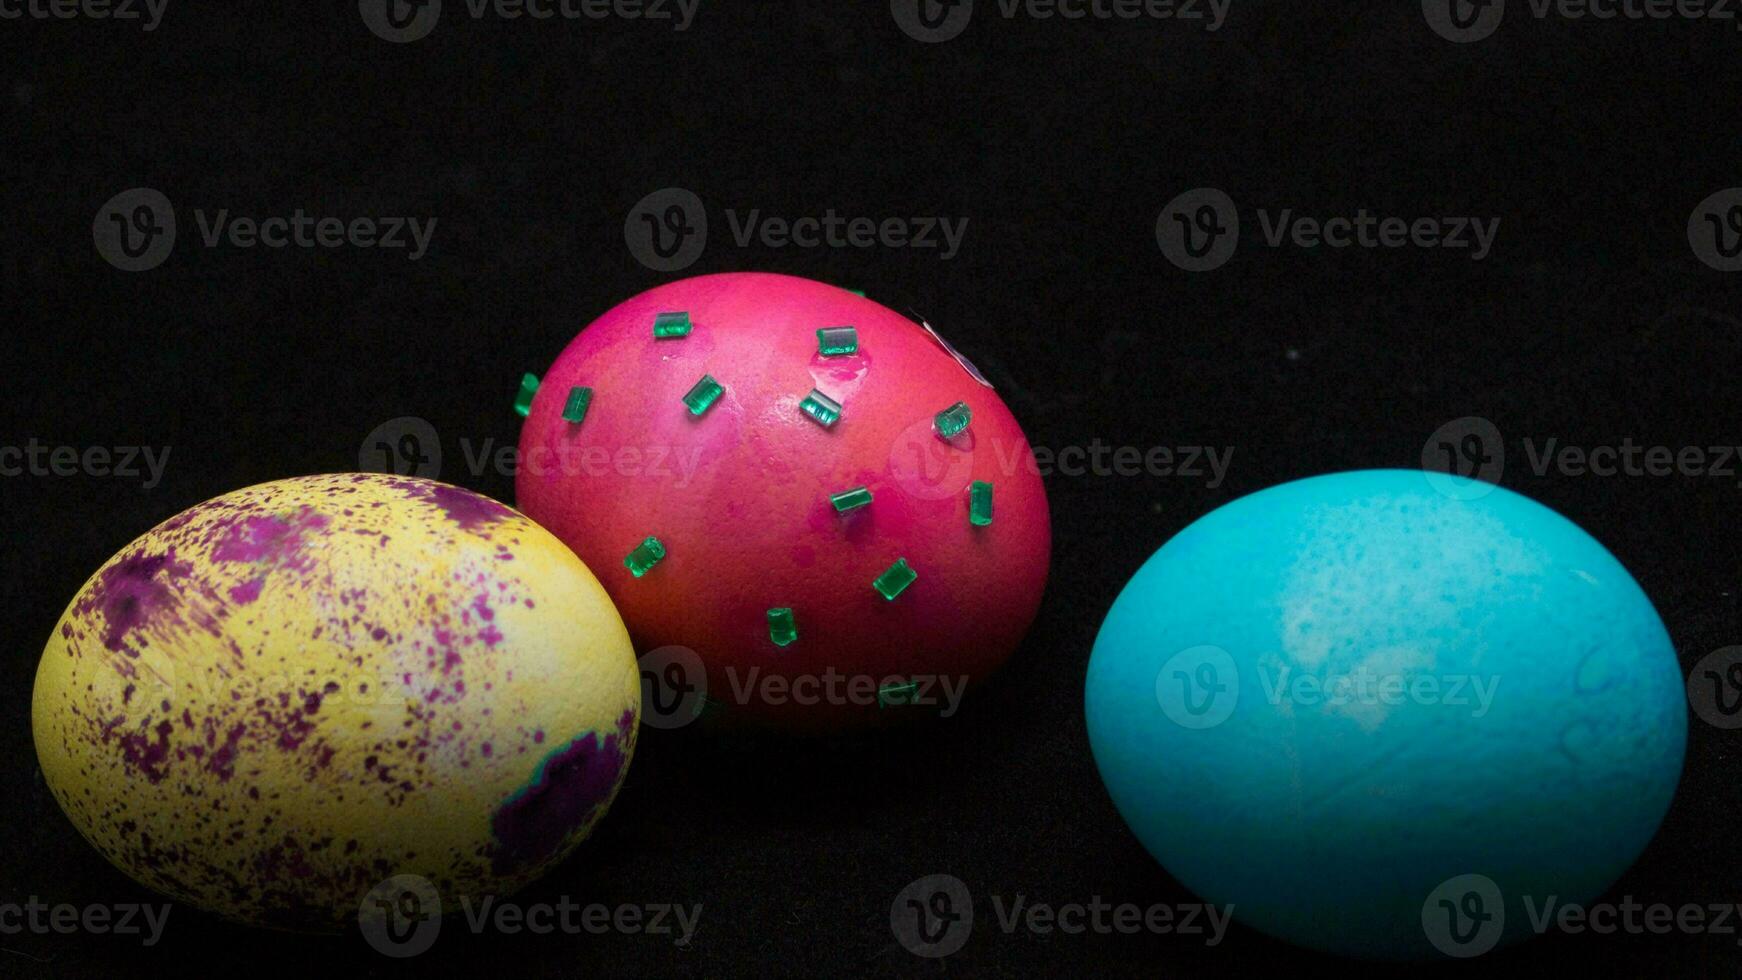 coloré Pâques des œufs. vibrant, de fête vacances décorations symbolisant printemps fête et traditionnel fleuri dessins photo